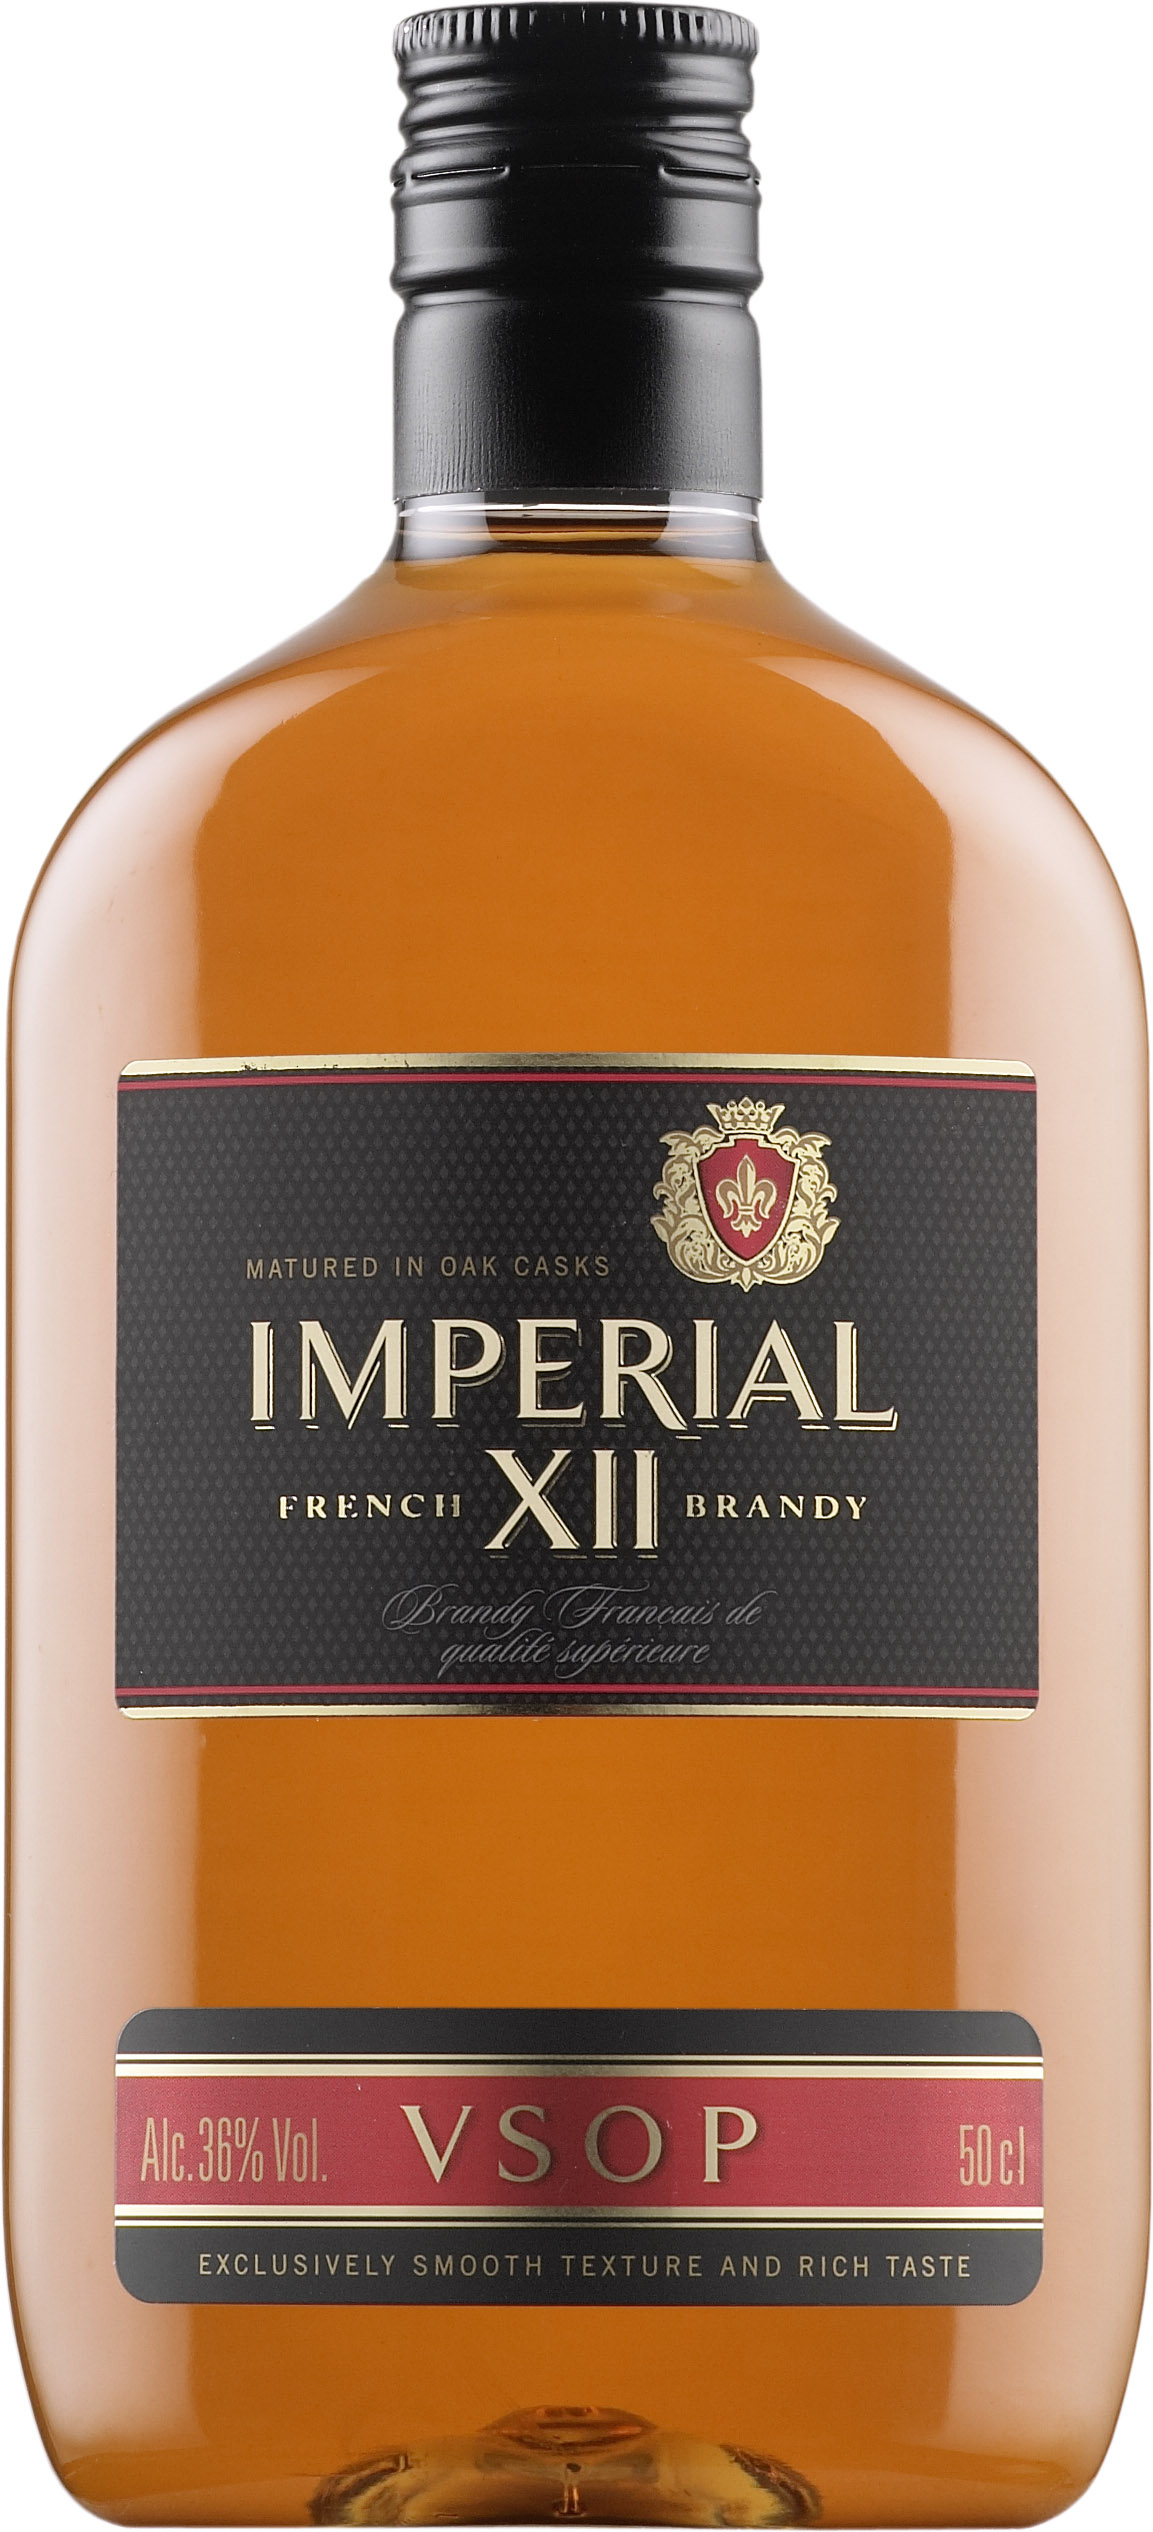 Imperial XII VSOP plastic bottle